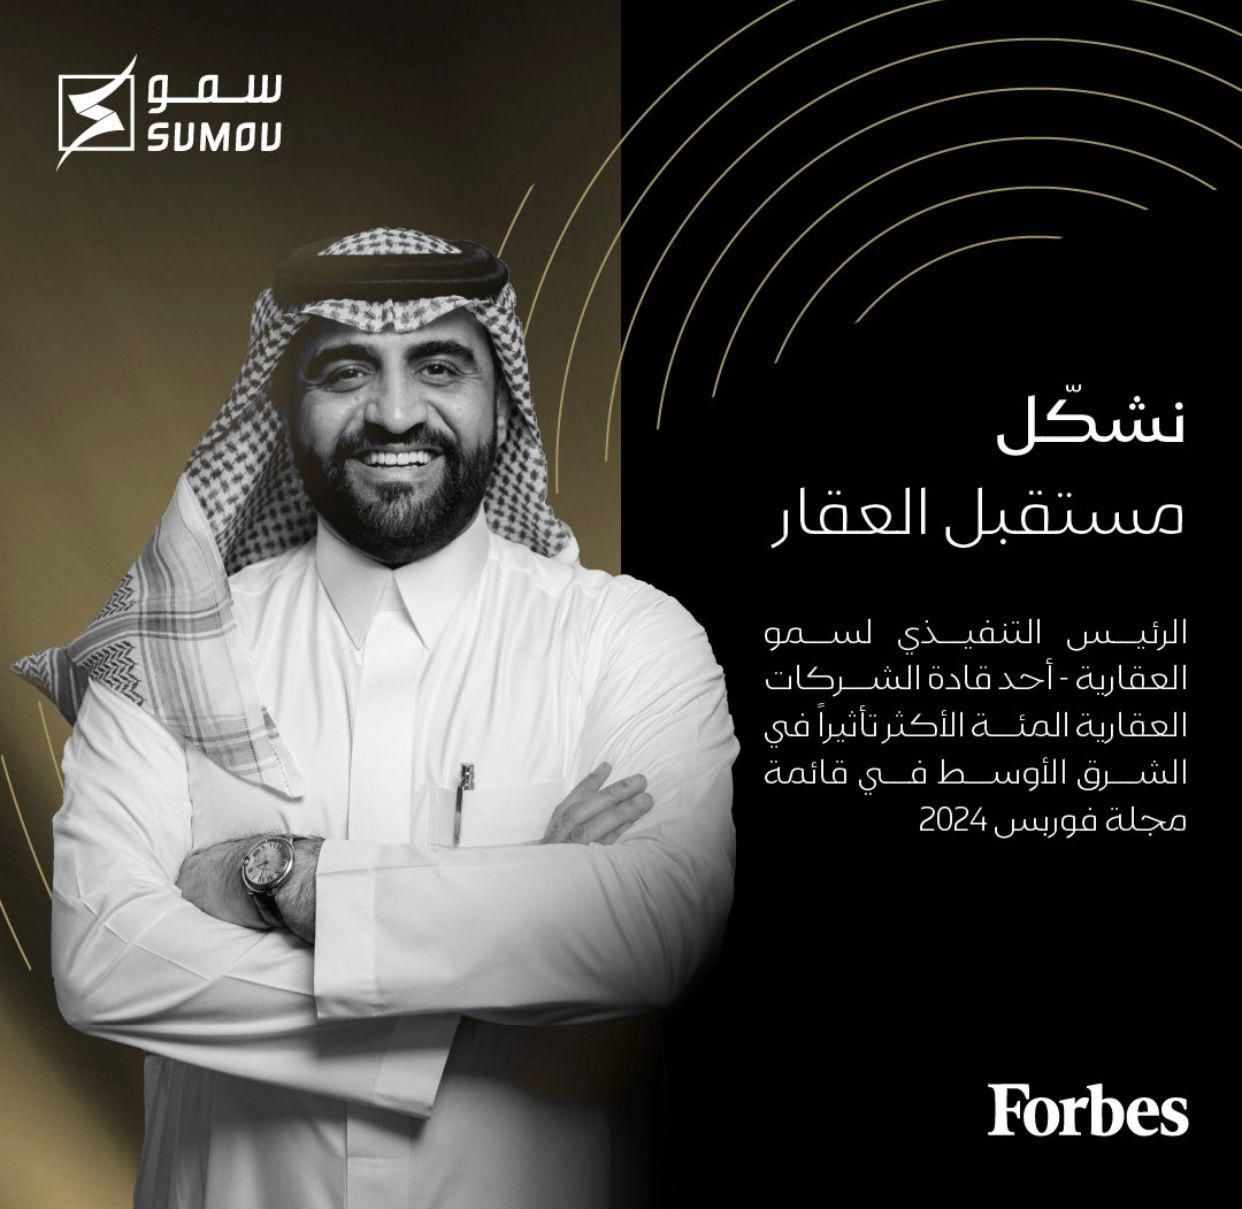 مجلة فوربس الشرق الأوسط تُكرم المهندس جار الله آل عمرة كقائد مؤثر في قطاع العقارات لعام 2024